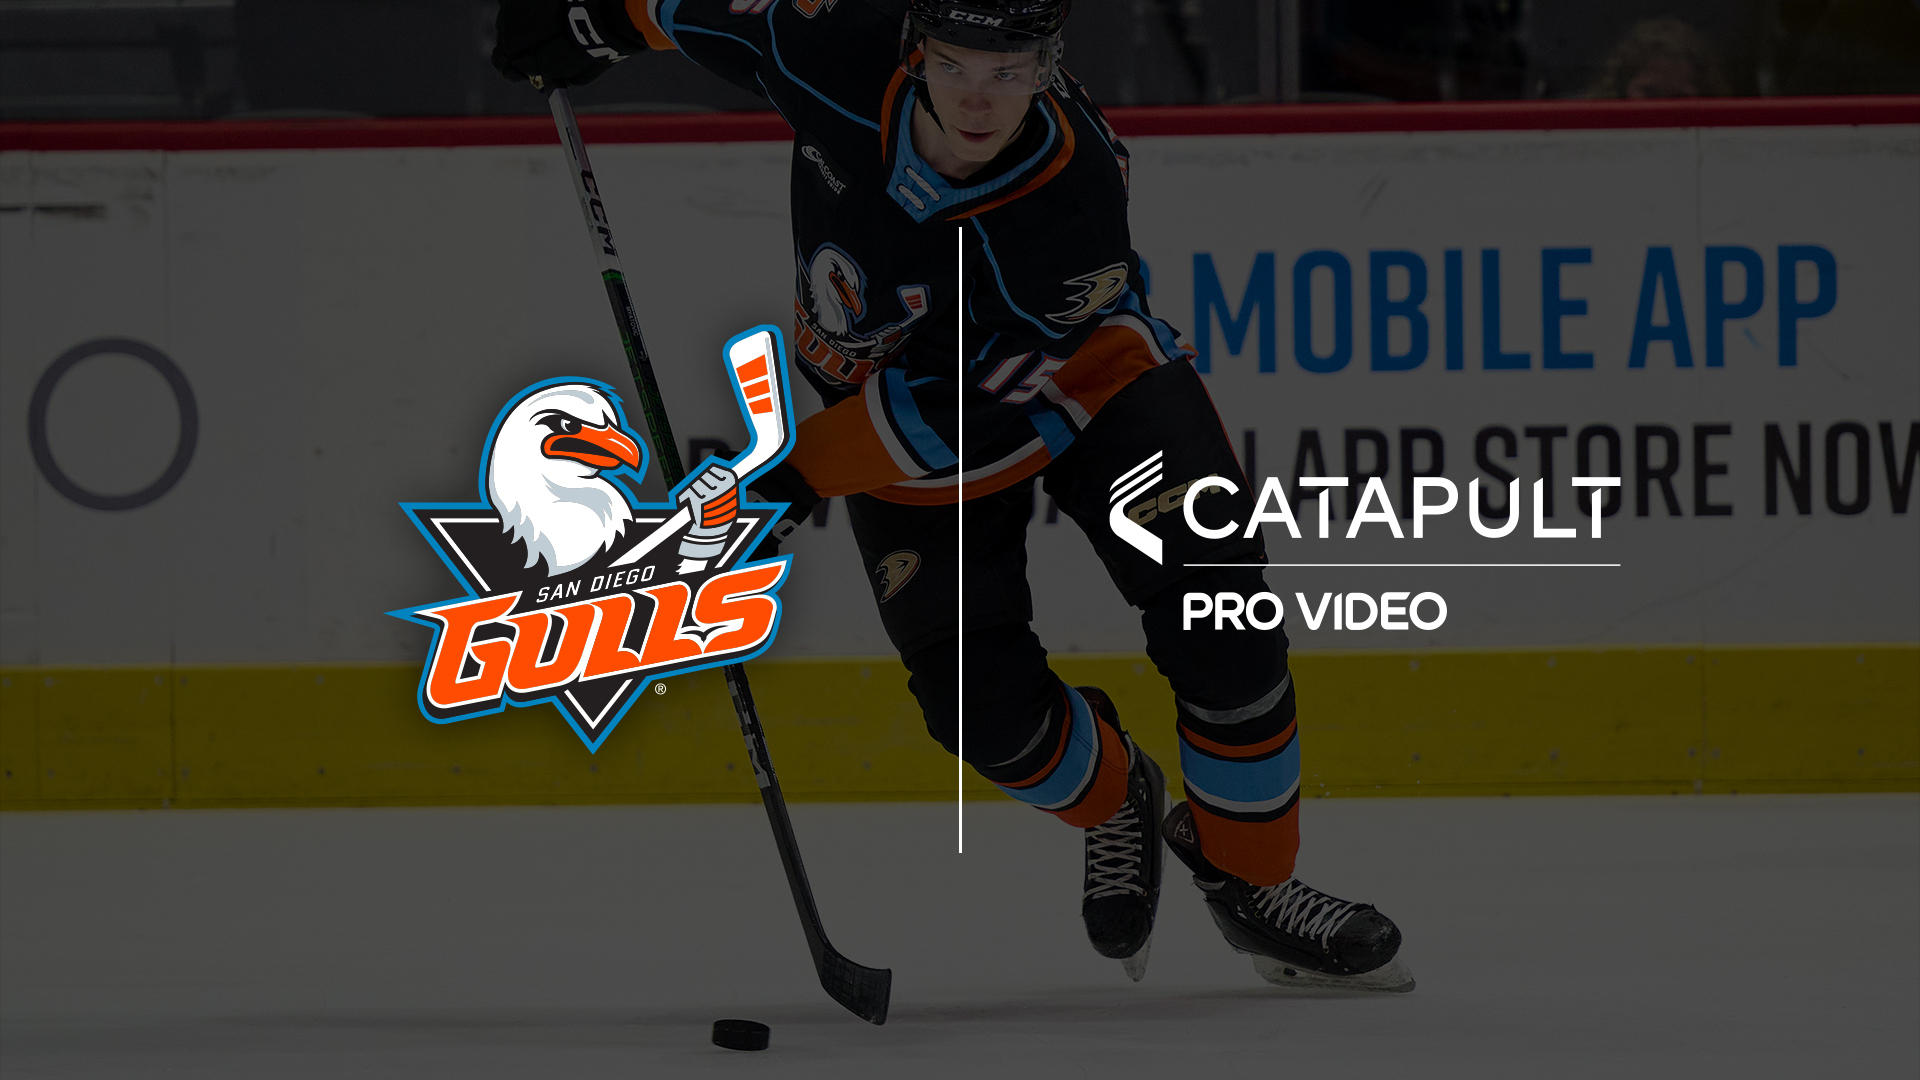 Un joueur de hockey des San Diego Gulls en action sur la glace, présentant côte à côte le logo des San Diego Gulls et le logo Catapult Pro Video, soulignant leur partenariat dans l'analyse vidéo avancée pour améliorer les performances de l'équipe.